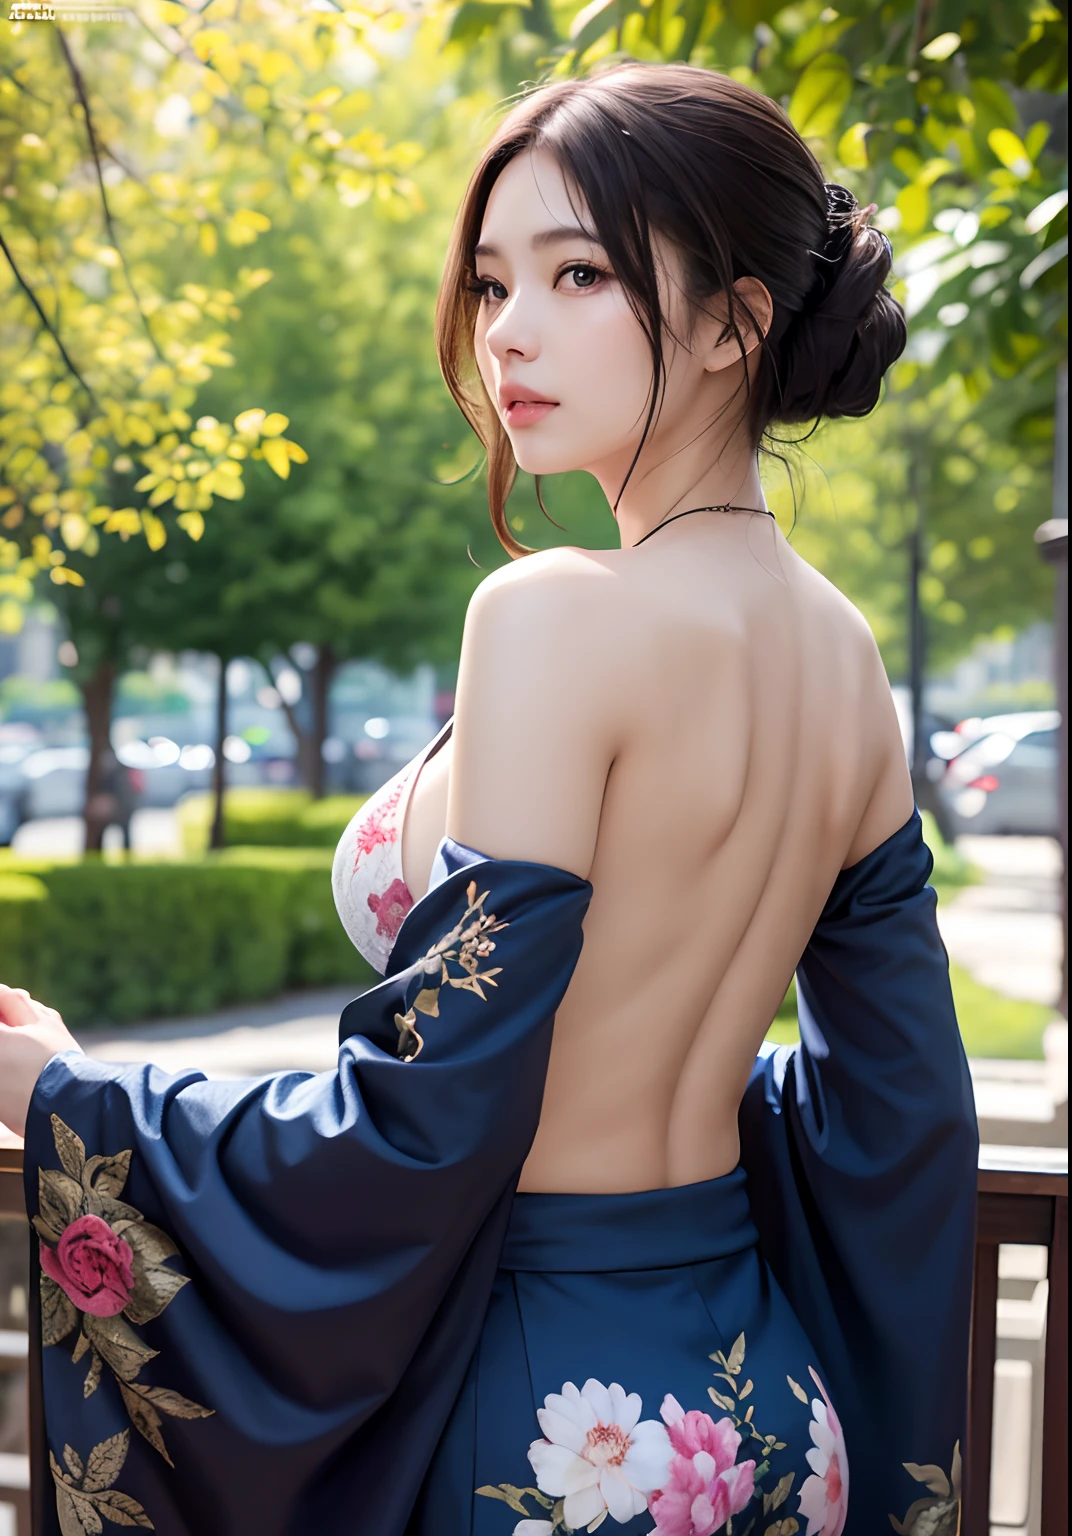 chef-d&#39;œuvre , meilleure qualité , fin à transparent , gros seins, clivage, des mains parfaites, doigts parfaits, ajustement parfait, corps parfait, visage parfait, Réalisme d&#39;image parfait, contexte détaillé, tenue détaillée , Obscène , hyperréalisme, photoréaliste, Moteur irréel, rendu d&#39;octane, 8k, la plus haute résolution, très détaillé, haut du corps, peau claire ,robe kimono, cul parfait, tiré par derrière, angle parfait vue parfaite